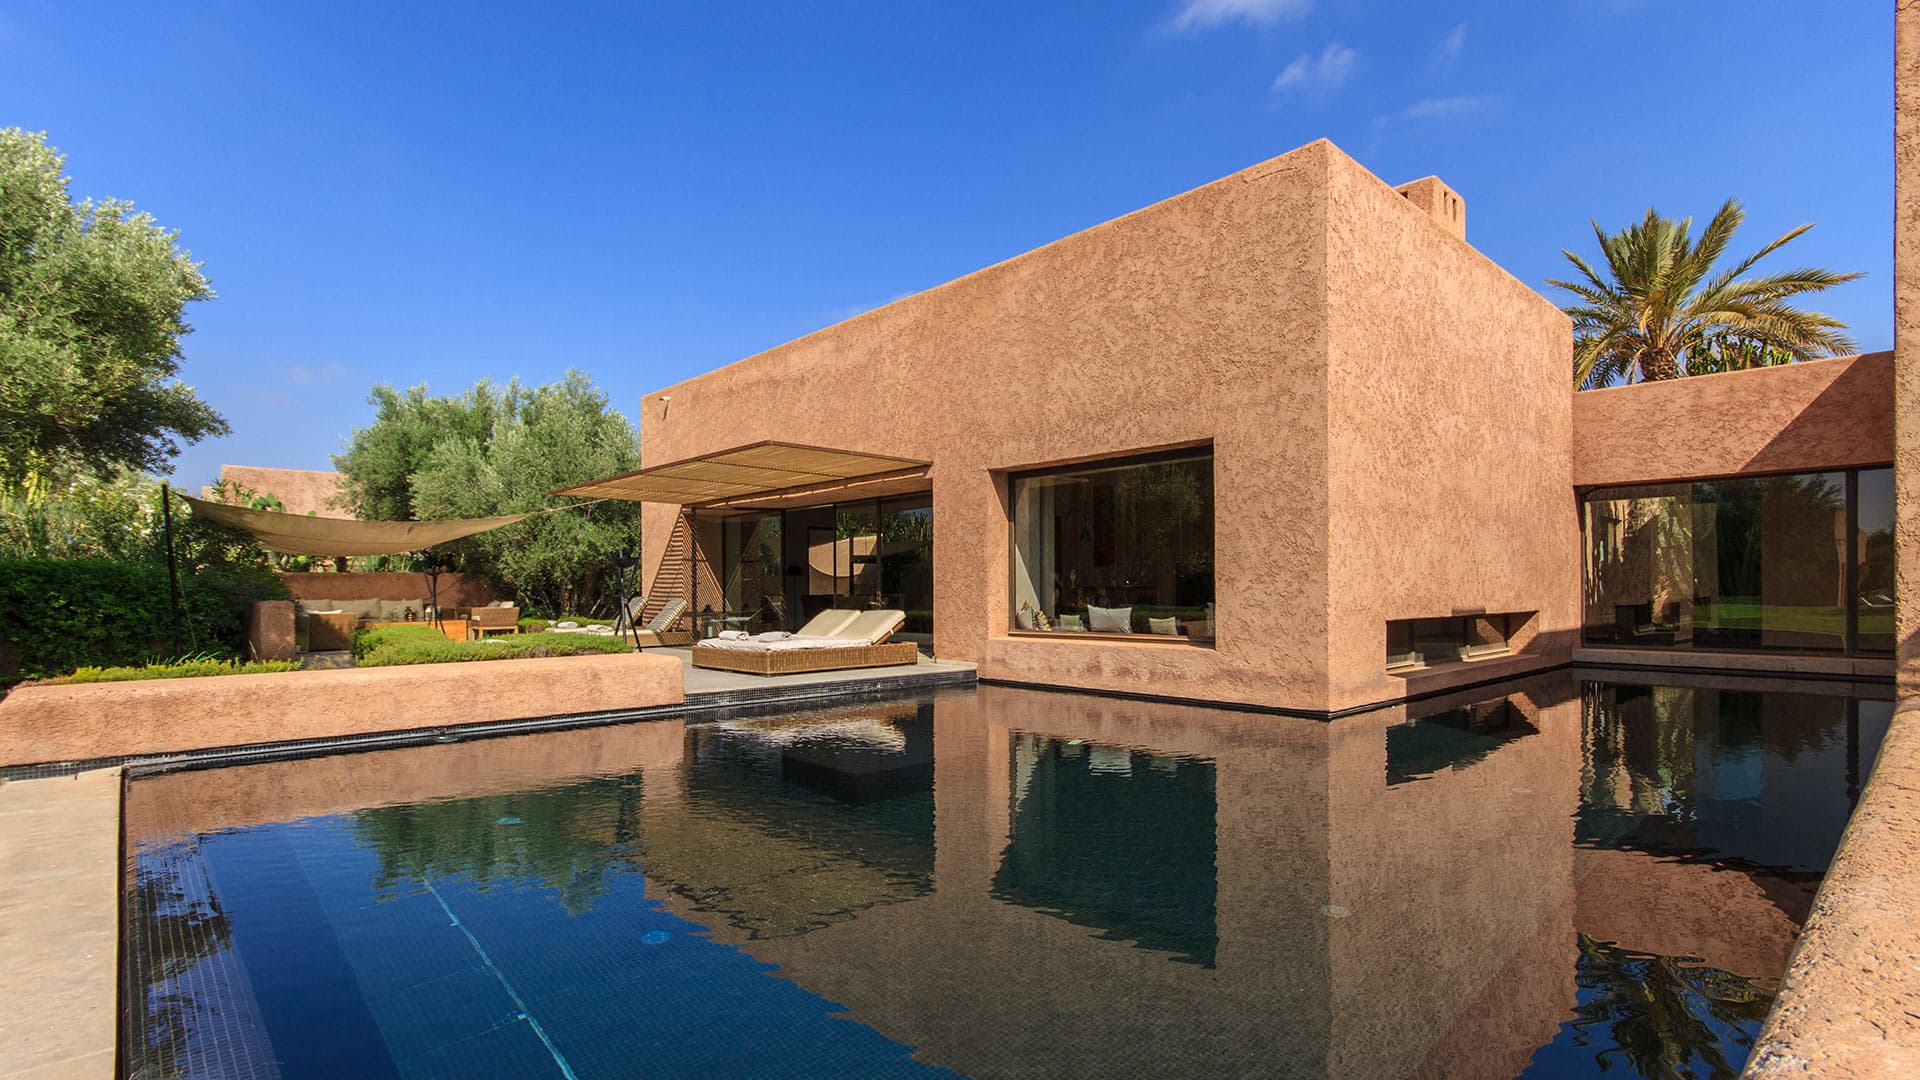 Villa Villa RL, Rental in Marrakech